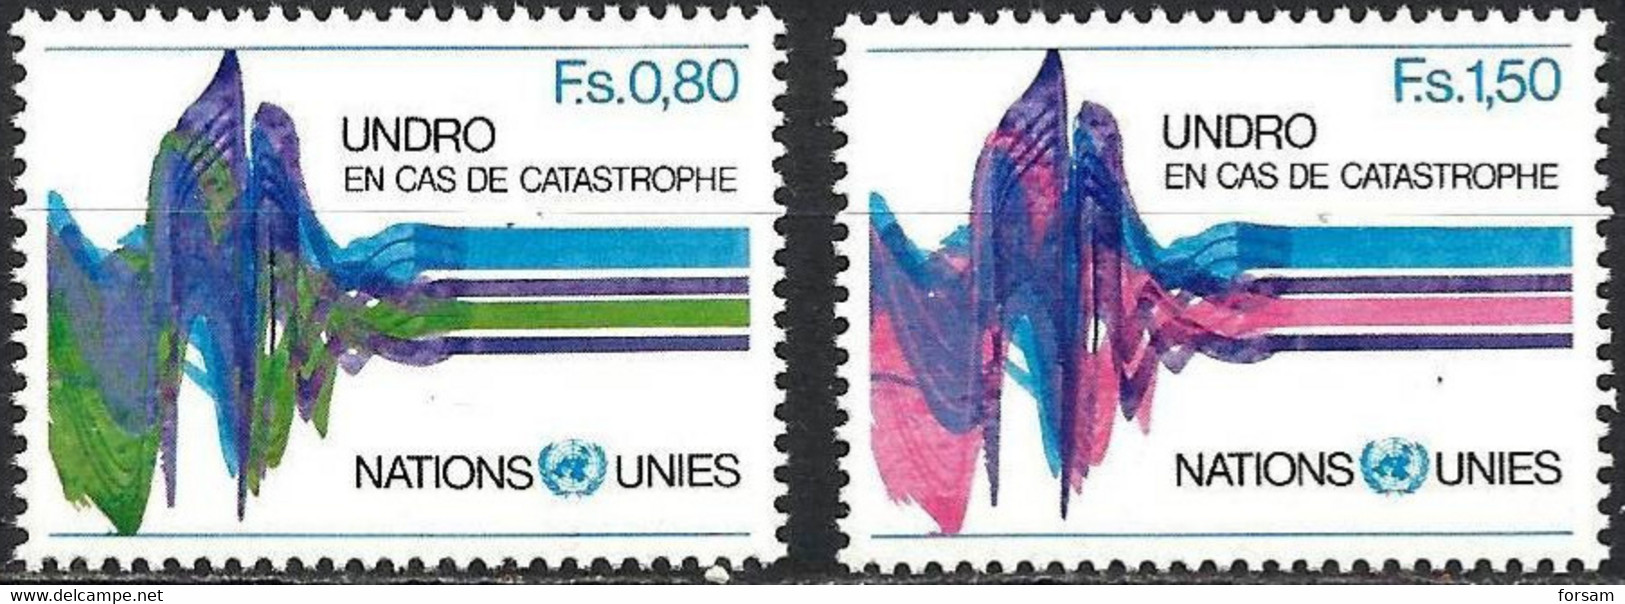 UN (Geneva)..1979..Michel # 81-82...MNH. - Unused Stamps